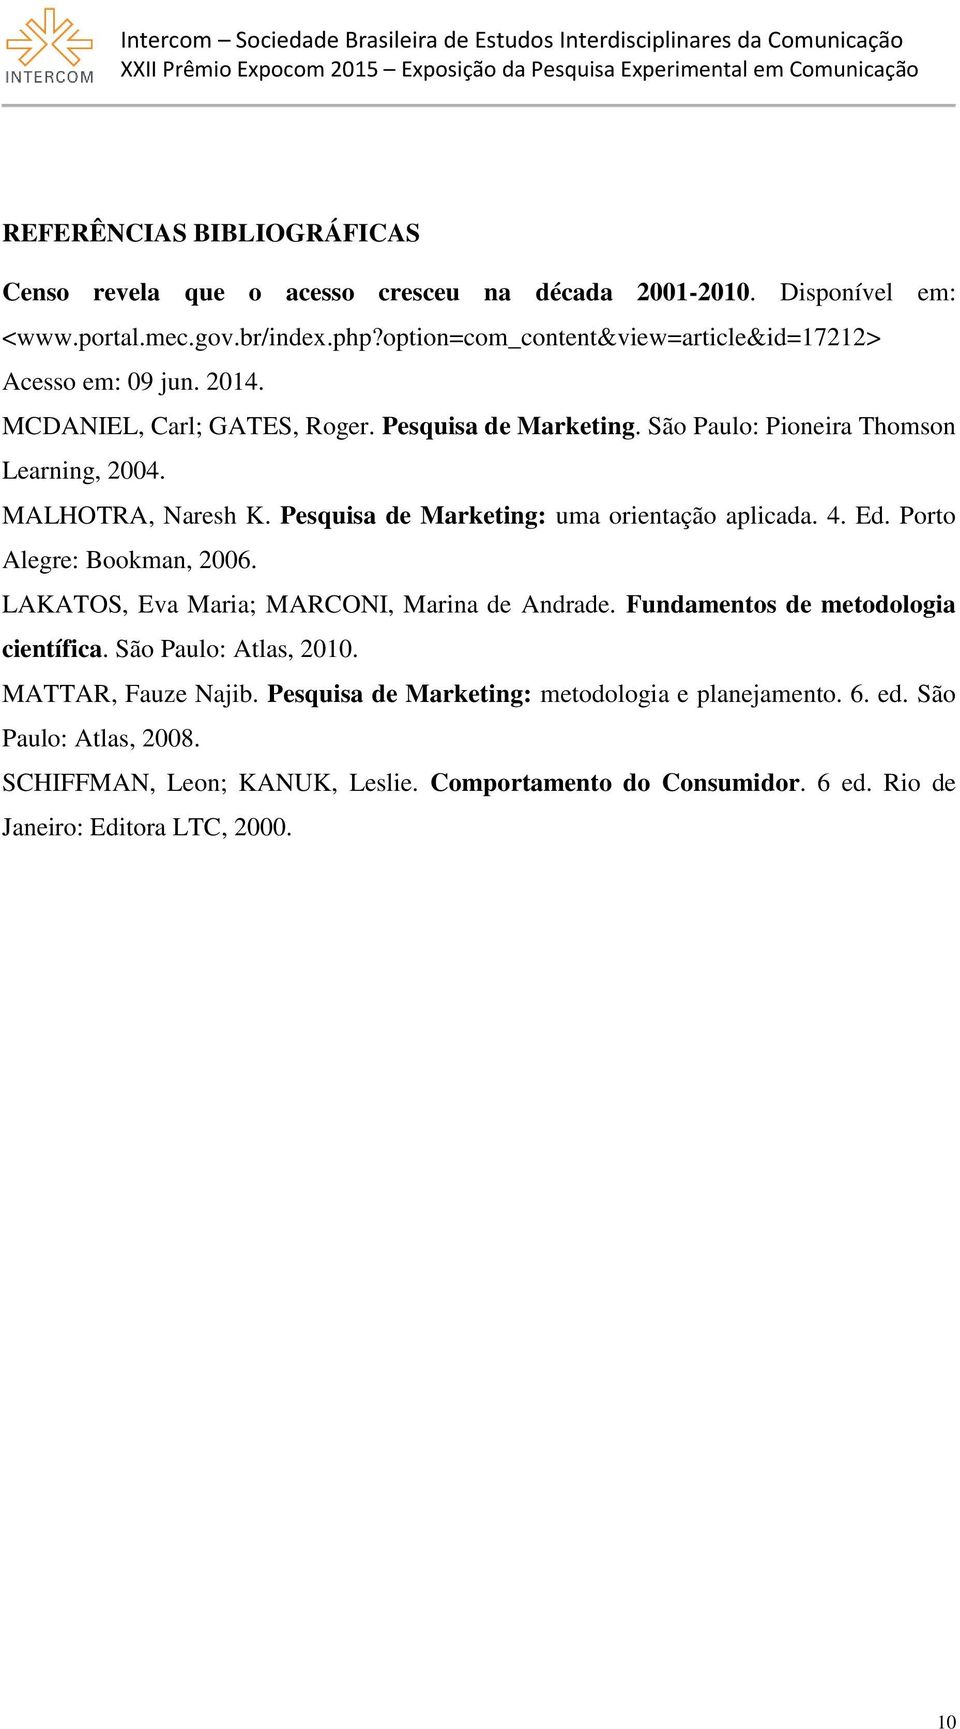 MALHOTRA, Naresh K. Pesquisa de Marketing: uma orientação aplicada. 4. Ed. Porto Alegre: Bookman, 2006. LAKATOS, Eva Maria; MARCONI, Marina de Andrade.